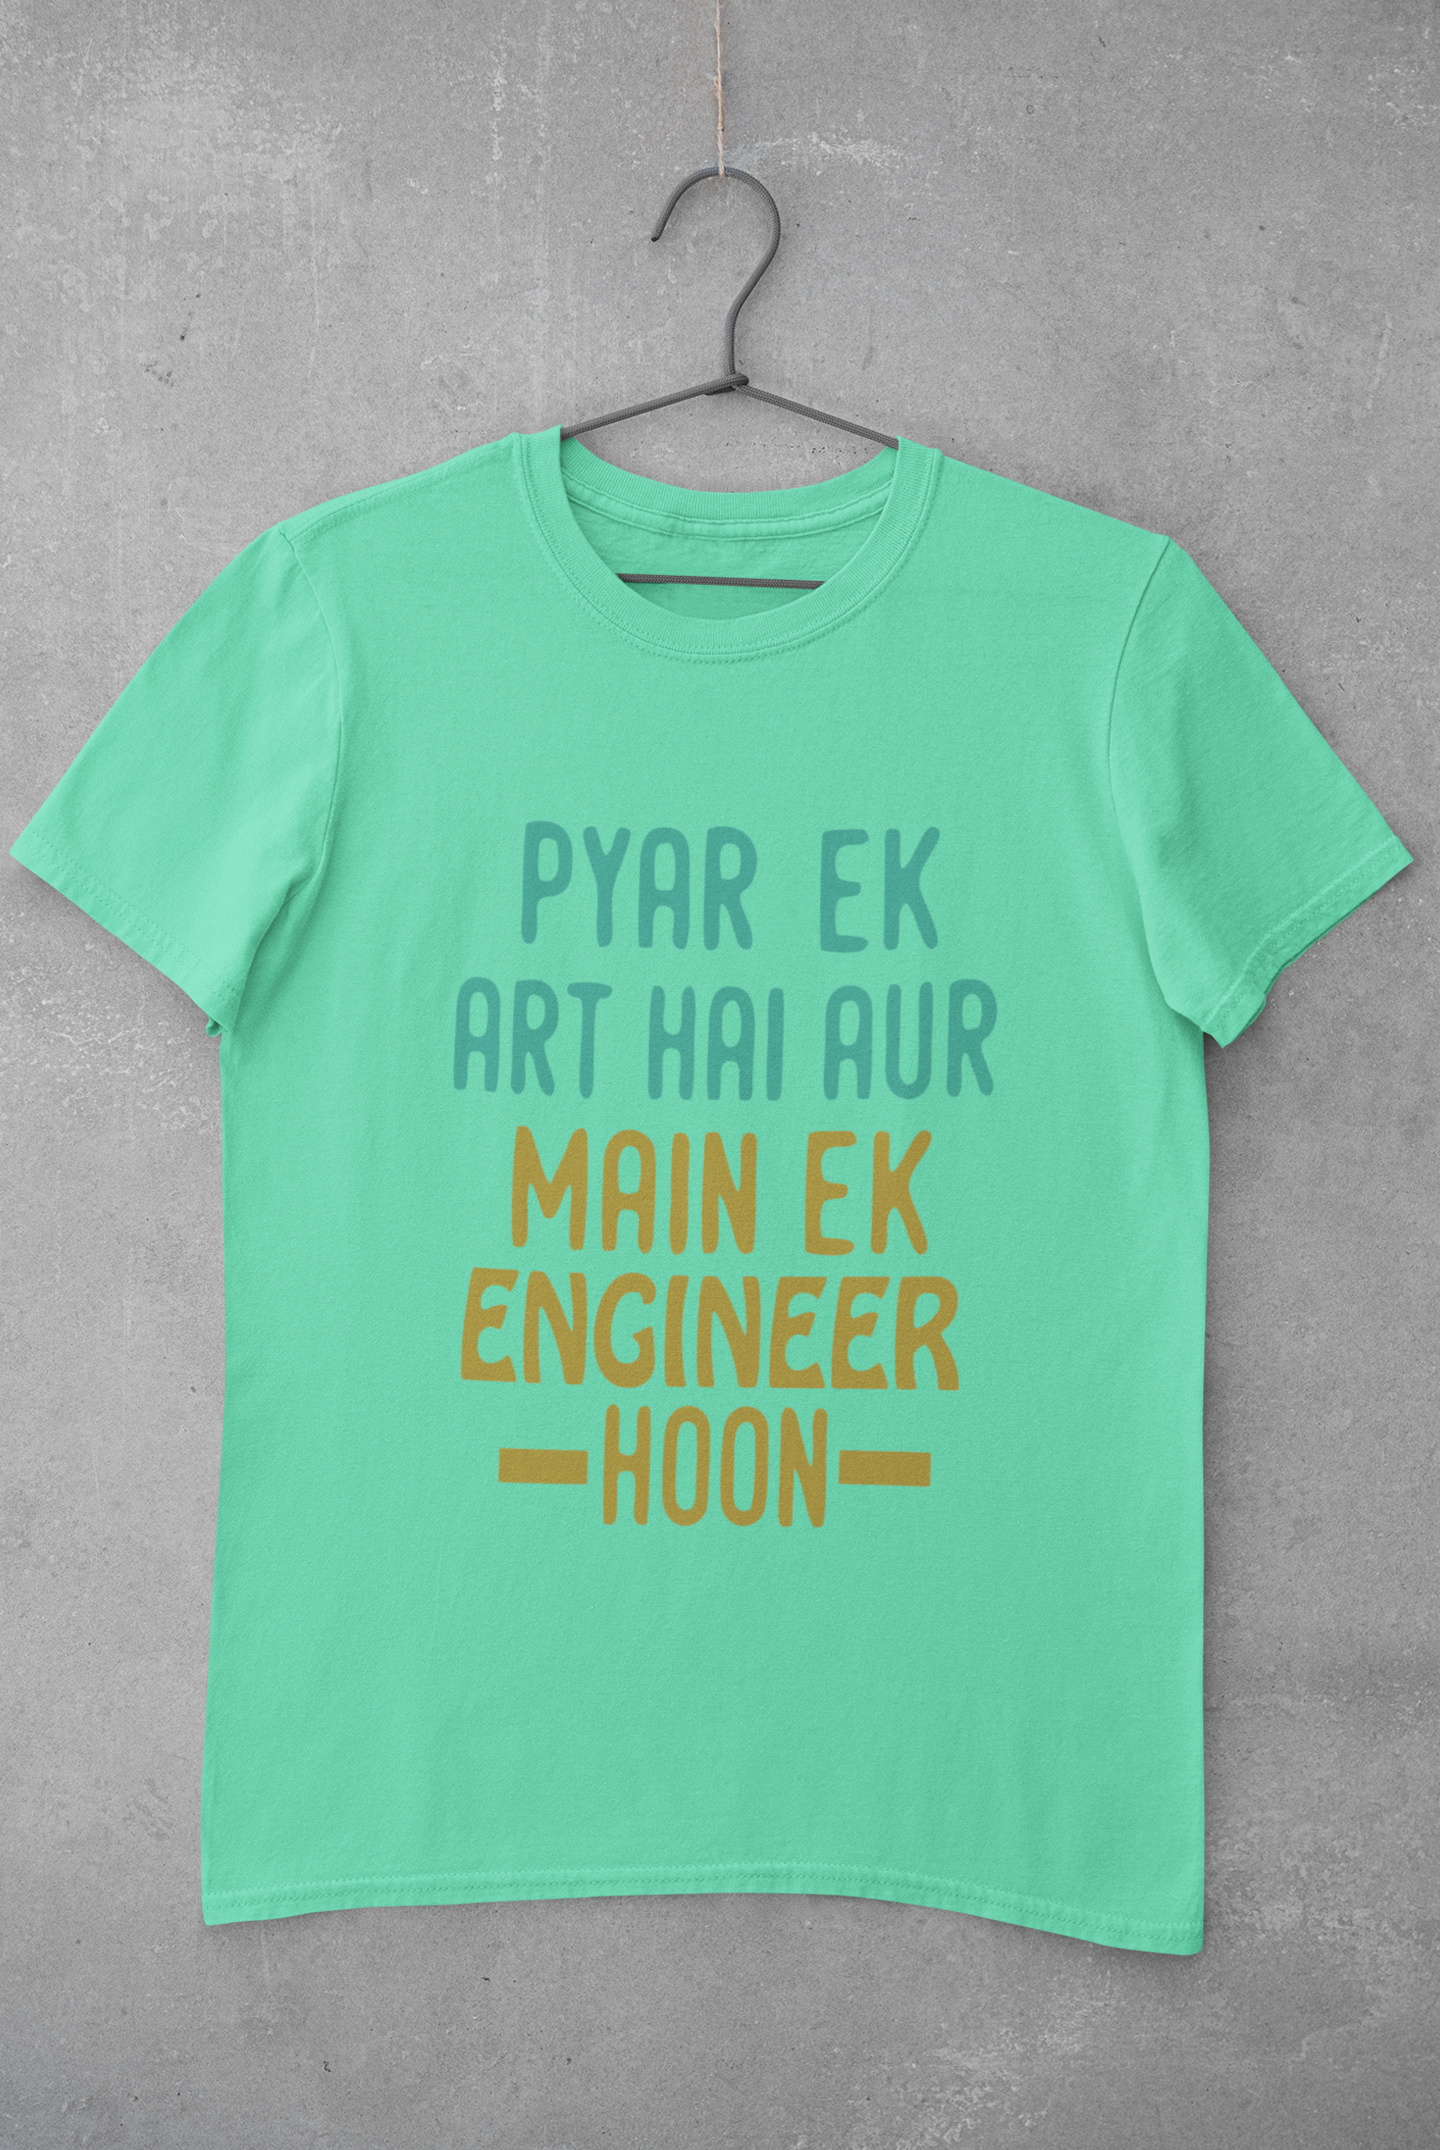 Pyaar Ek Art Hai Aur Main Ek Engineer Ho Mens Half Sleeves T-shirt- FunkyTeesClub